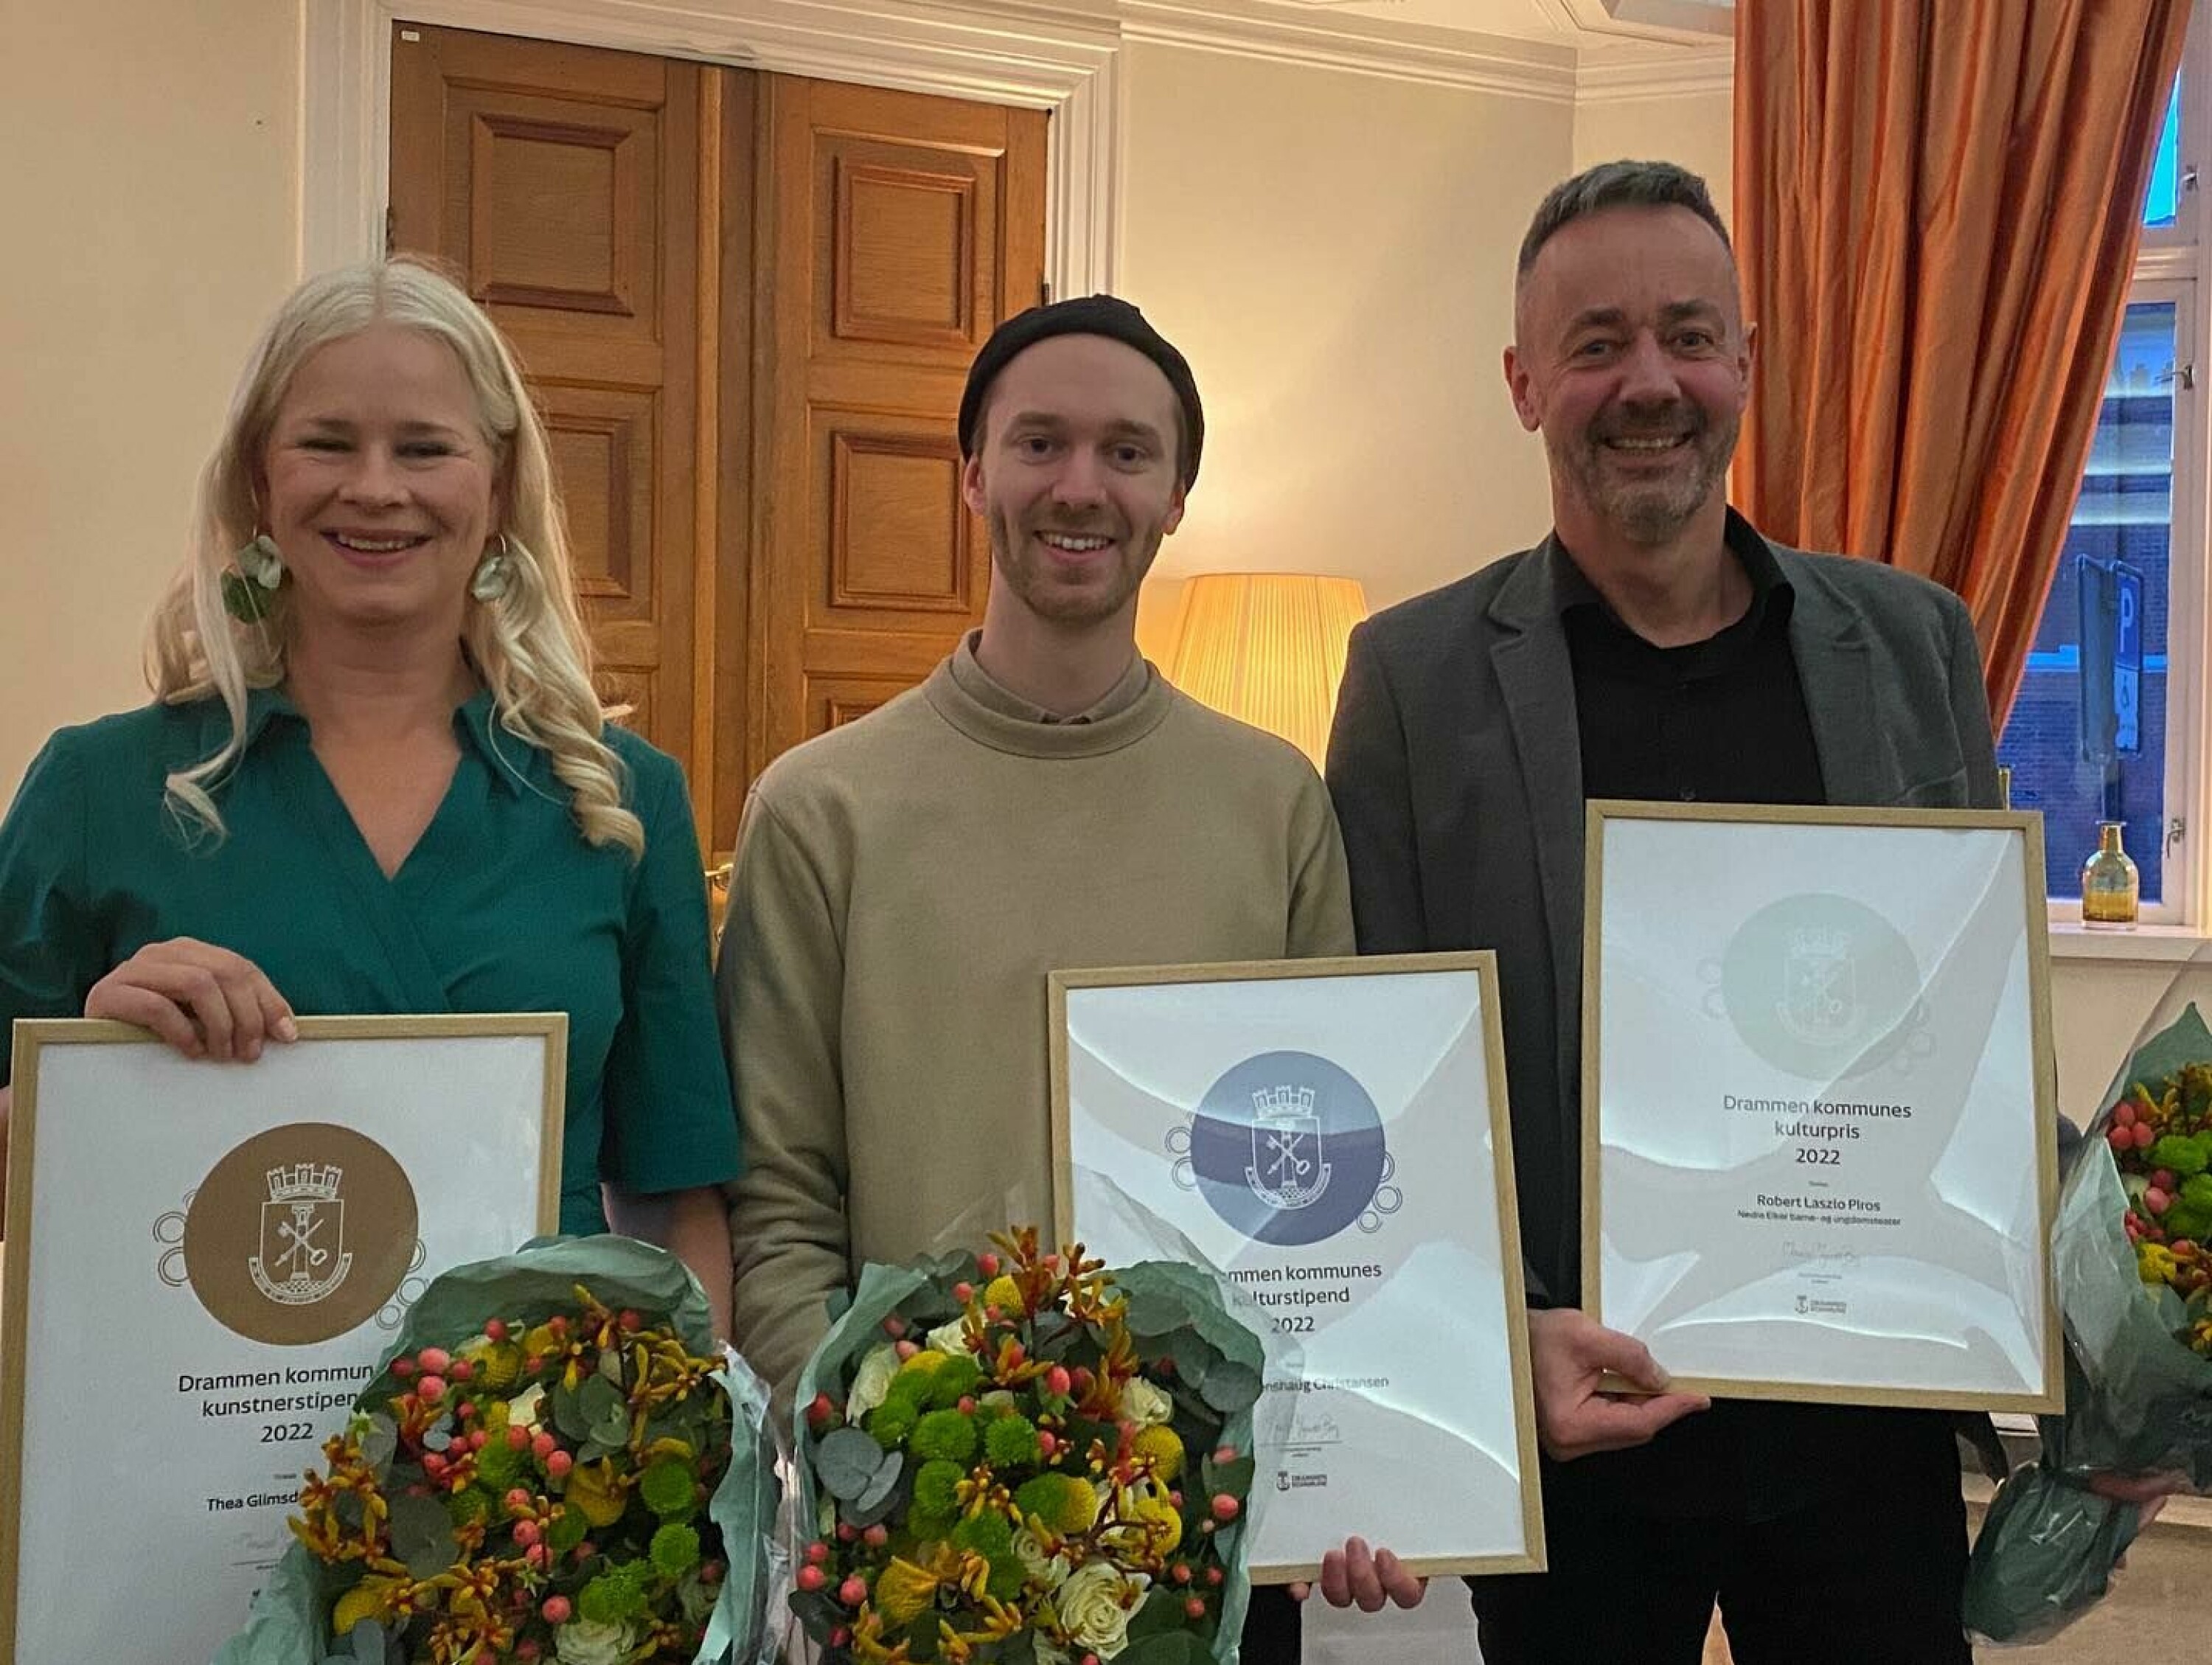 Thea Glimsdal Temte, Jonas Evenshaug Christiansen og Robert Piros mottok priser, blomster og diplom fra kommunen.